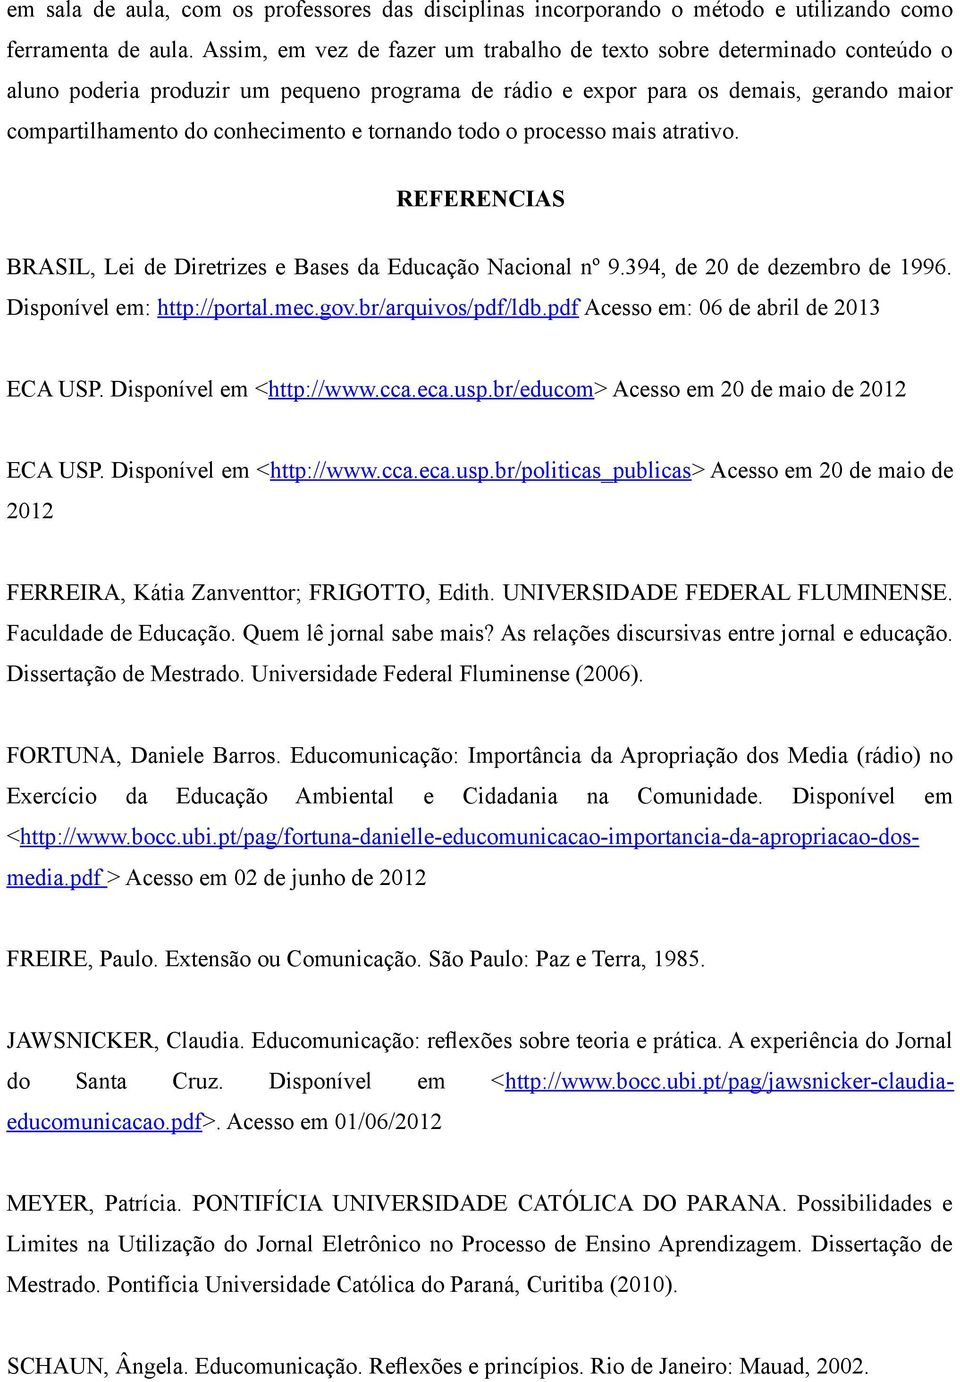 tornando todo o processo mais atrativo. REFERENCIAS BRASIL, Lei de Diretrizes e Bases da Educação Nacional nº 9.394, de 20 de dezembro de 1996. Disponível em: http://portal.mec.gov.